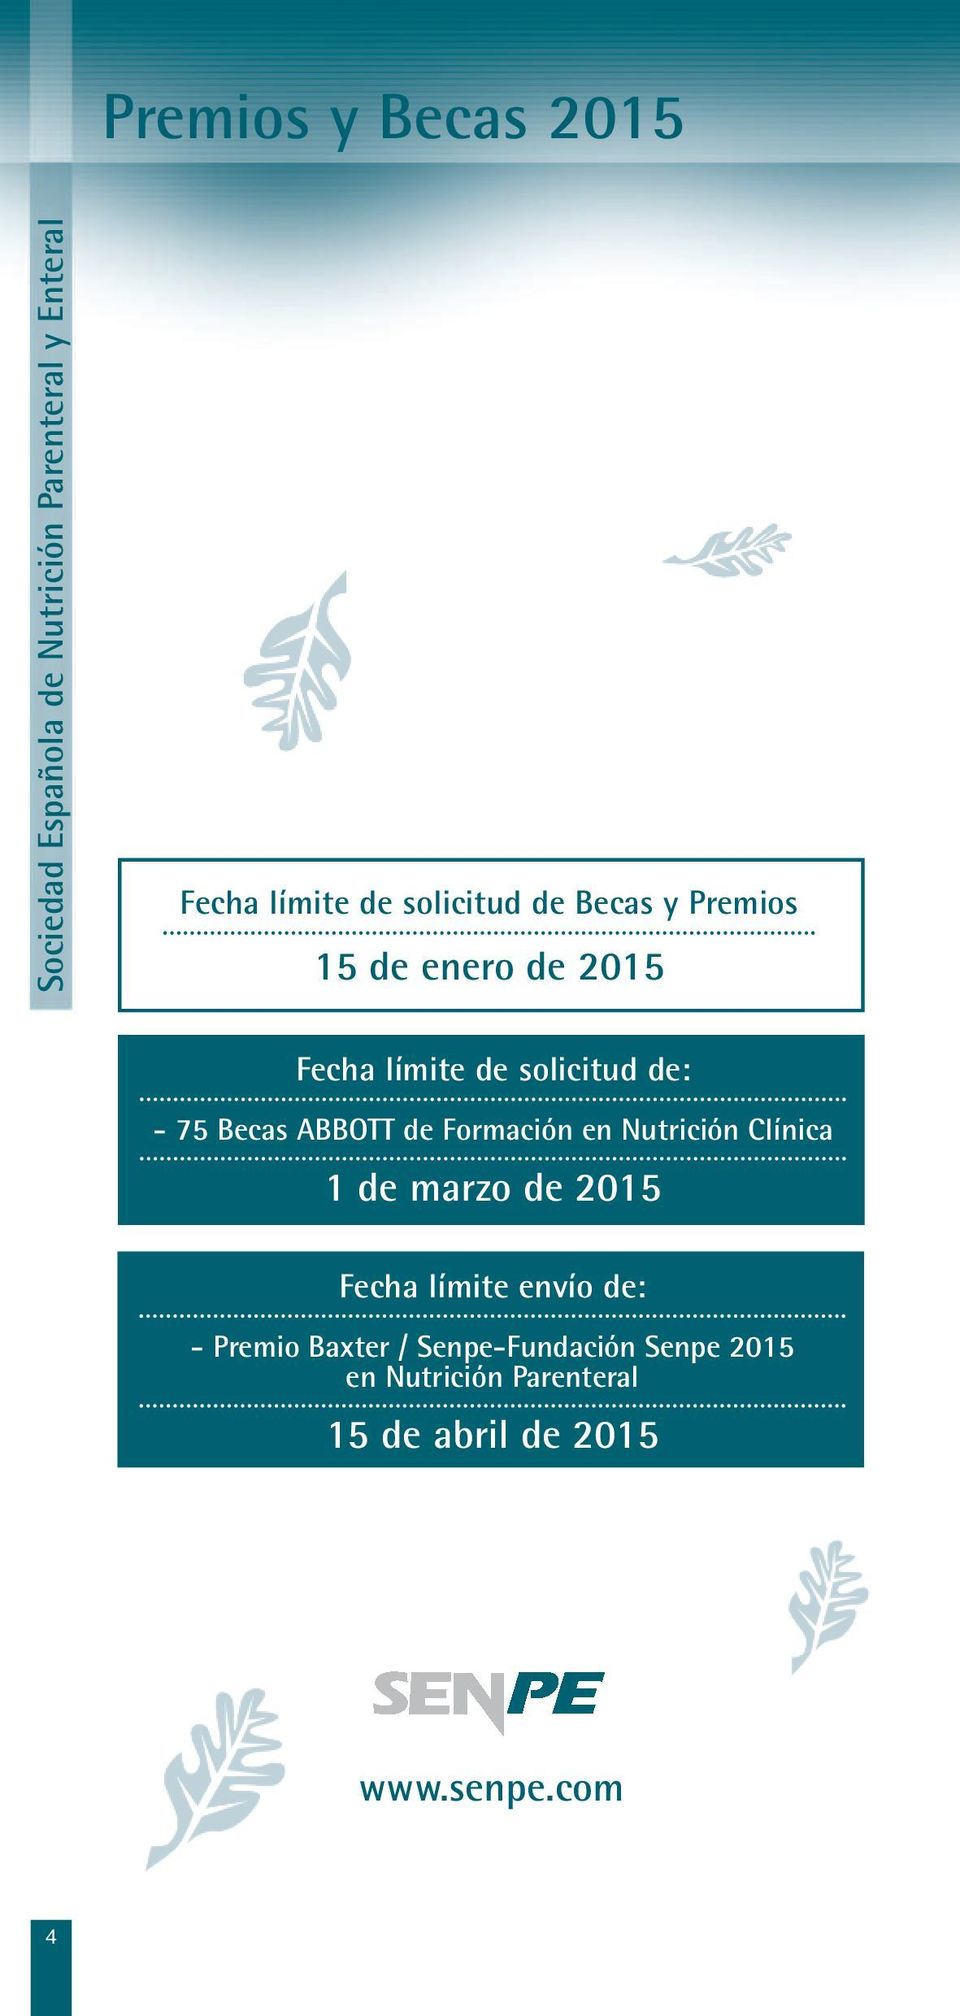 ABBOTT de Formación en Nutrición Clínica 1 de marzo de 2015 Fecha límite envío de: - Premio